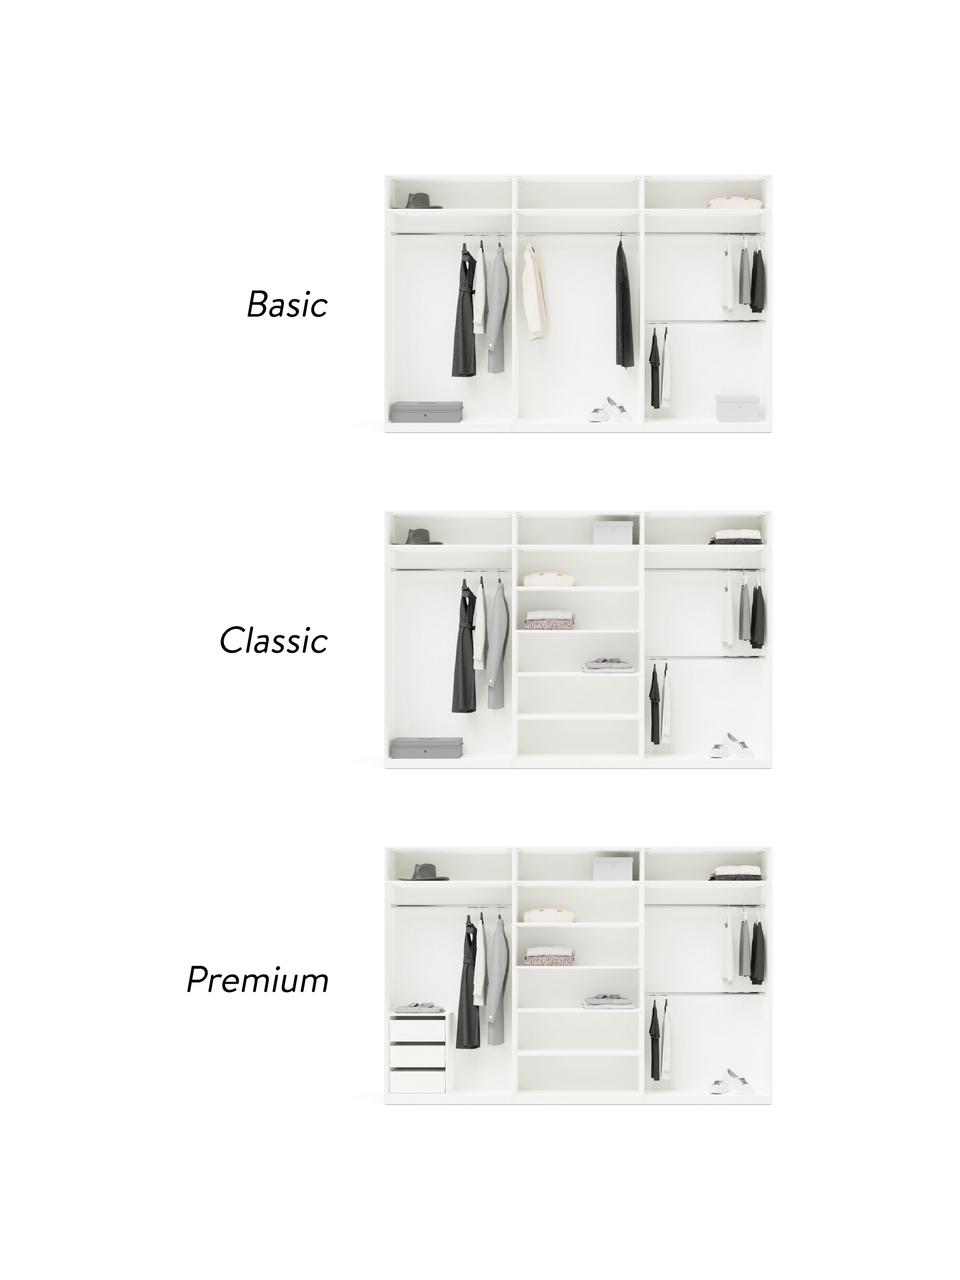 Modulaire draaideurkast Leon in wit, 300 cm breed, verschillende varianten, Hout, wit, Premium interieur, hoogte 236 cm